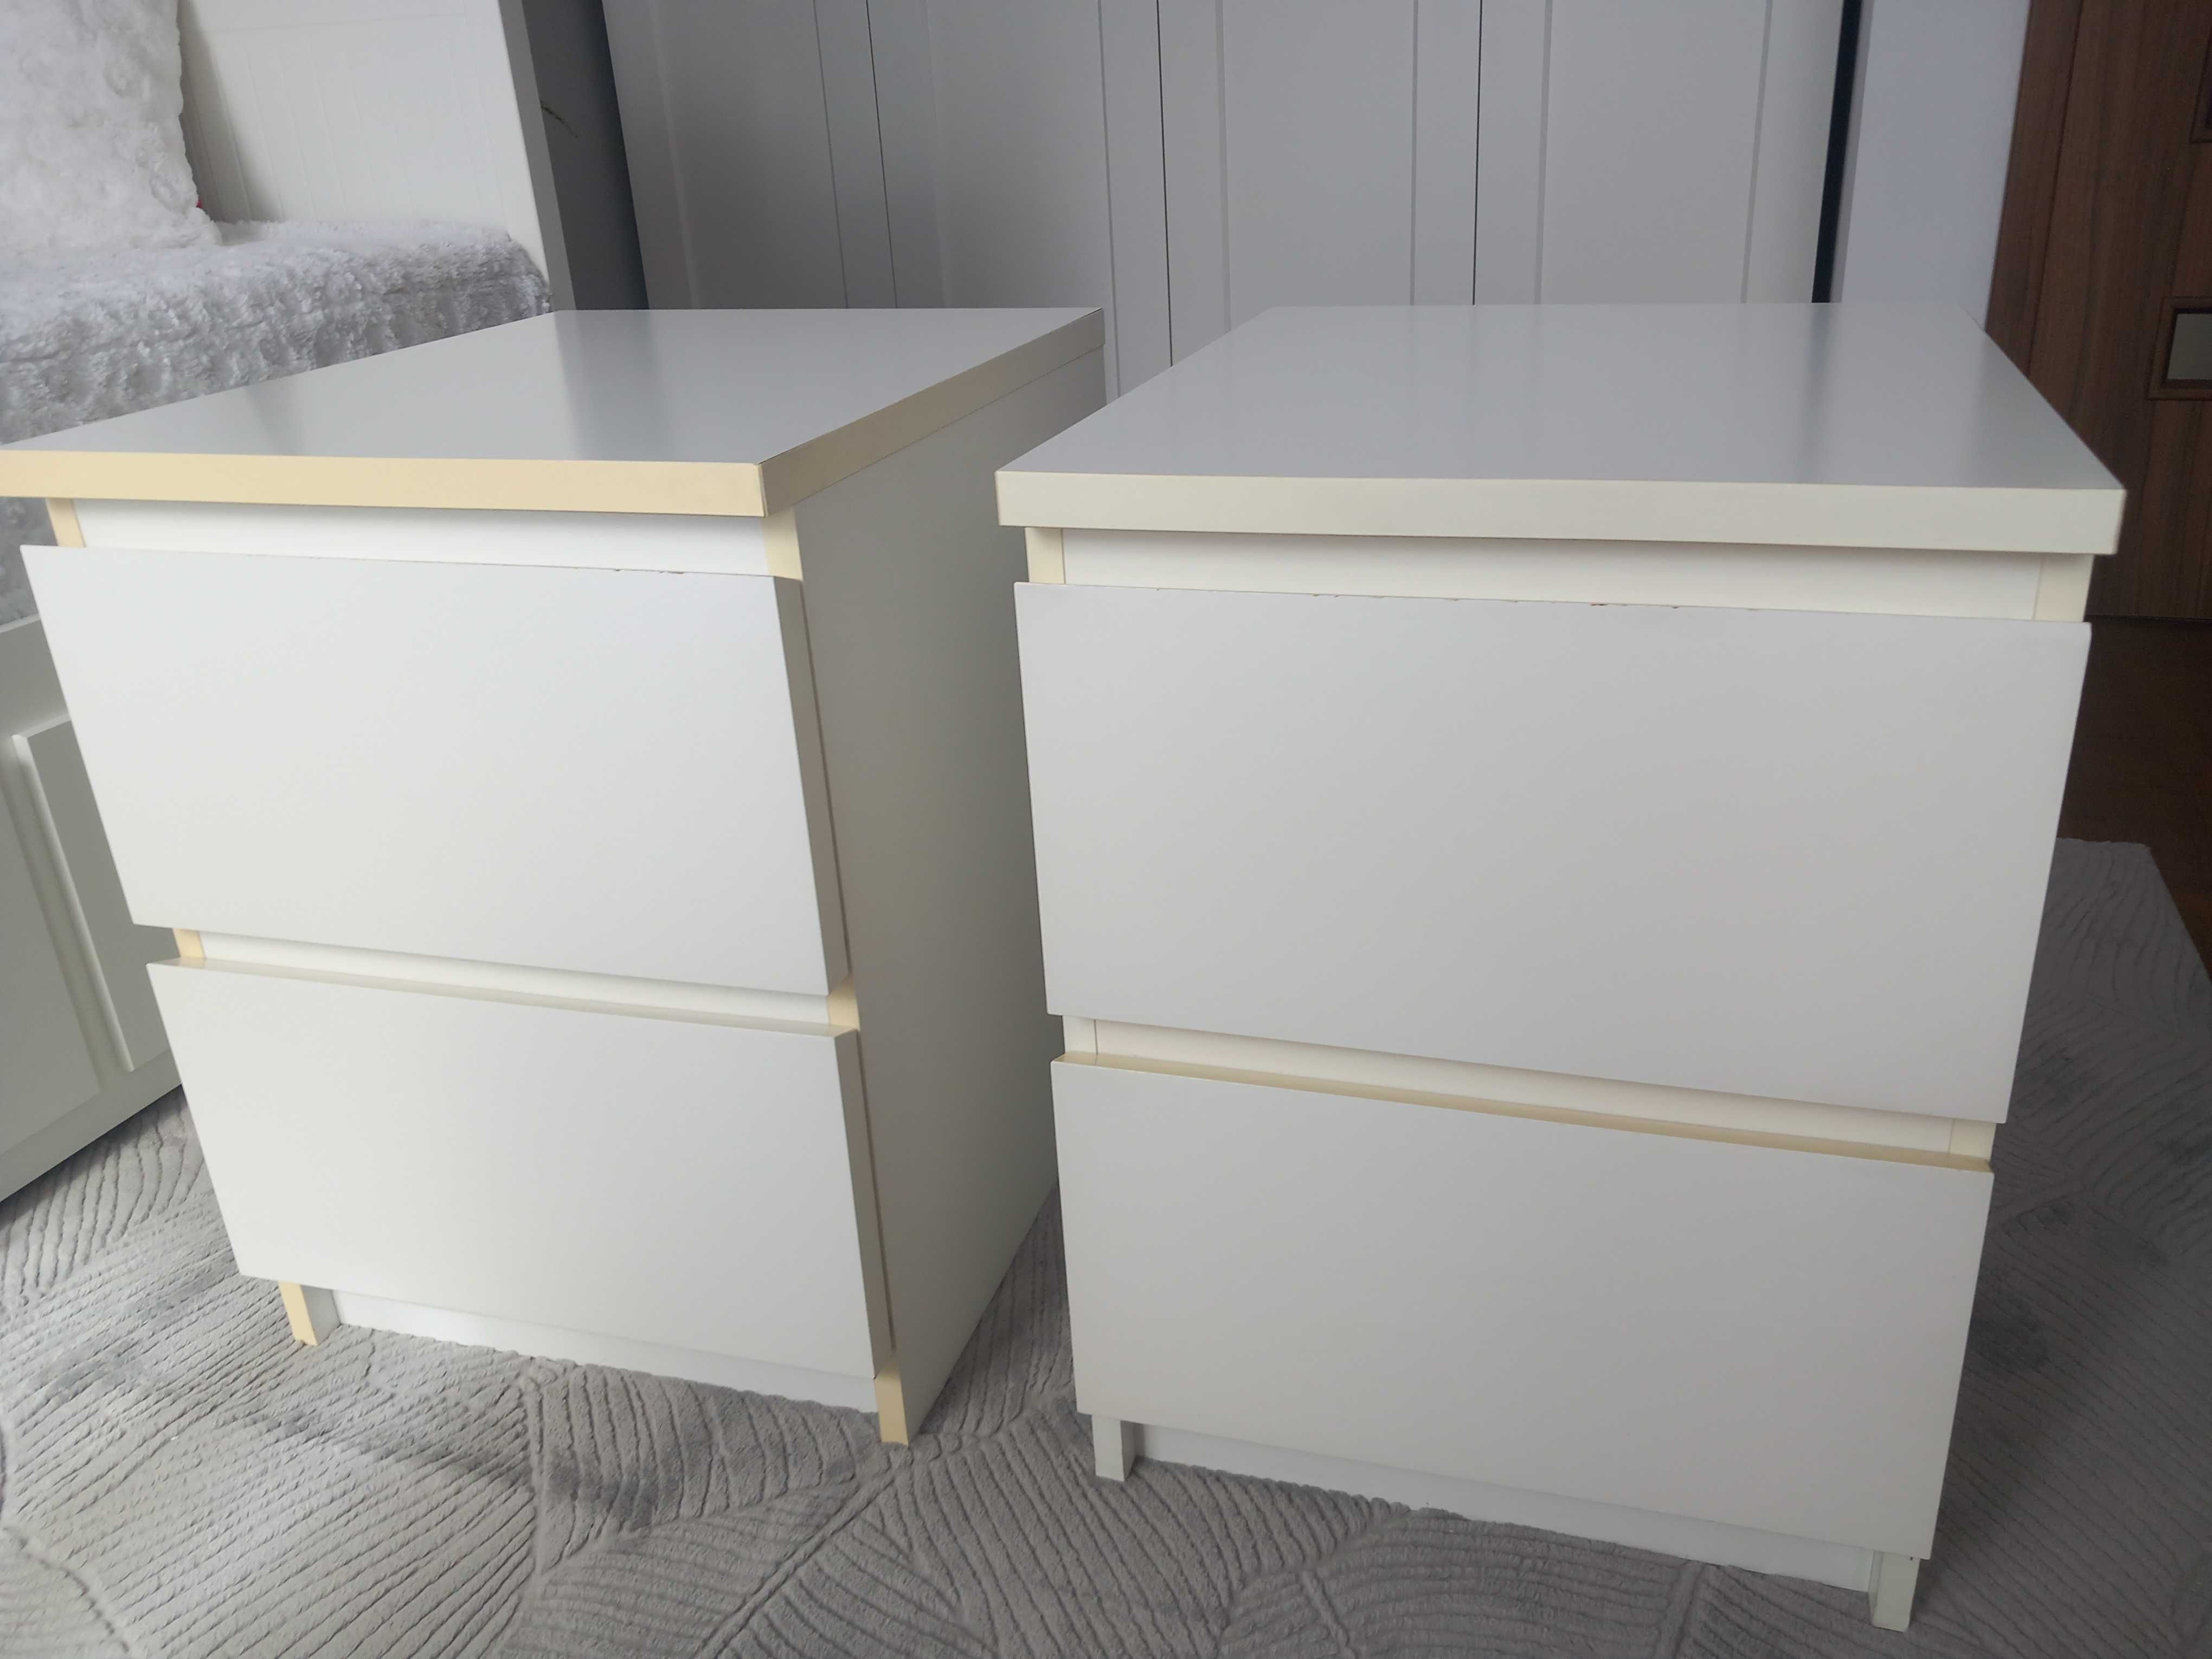 biała komoda Malm Ikea, 2 szuflady, 40x55 (80zł/szt)